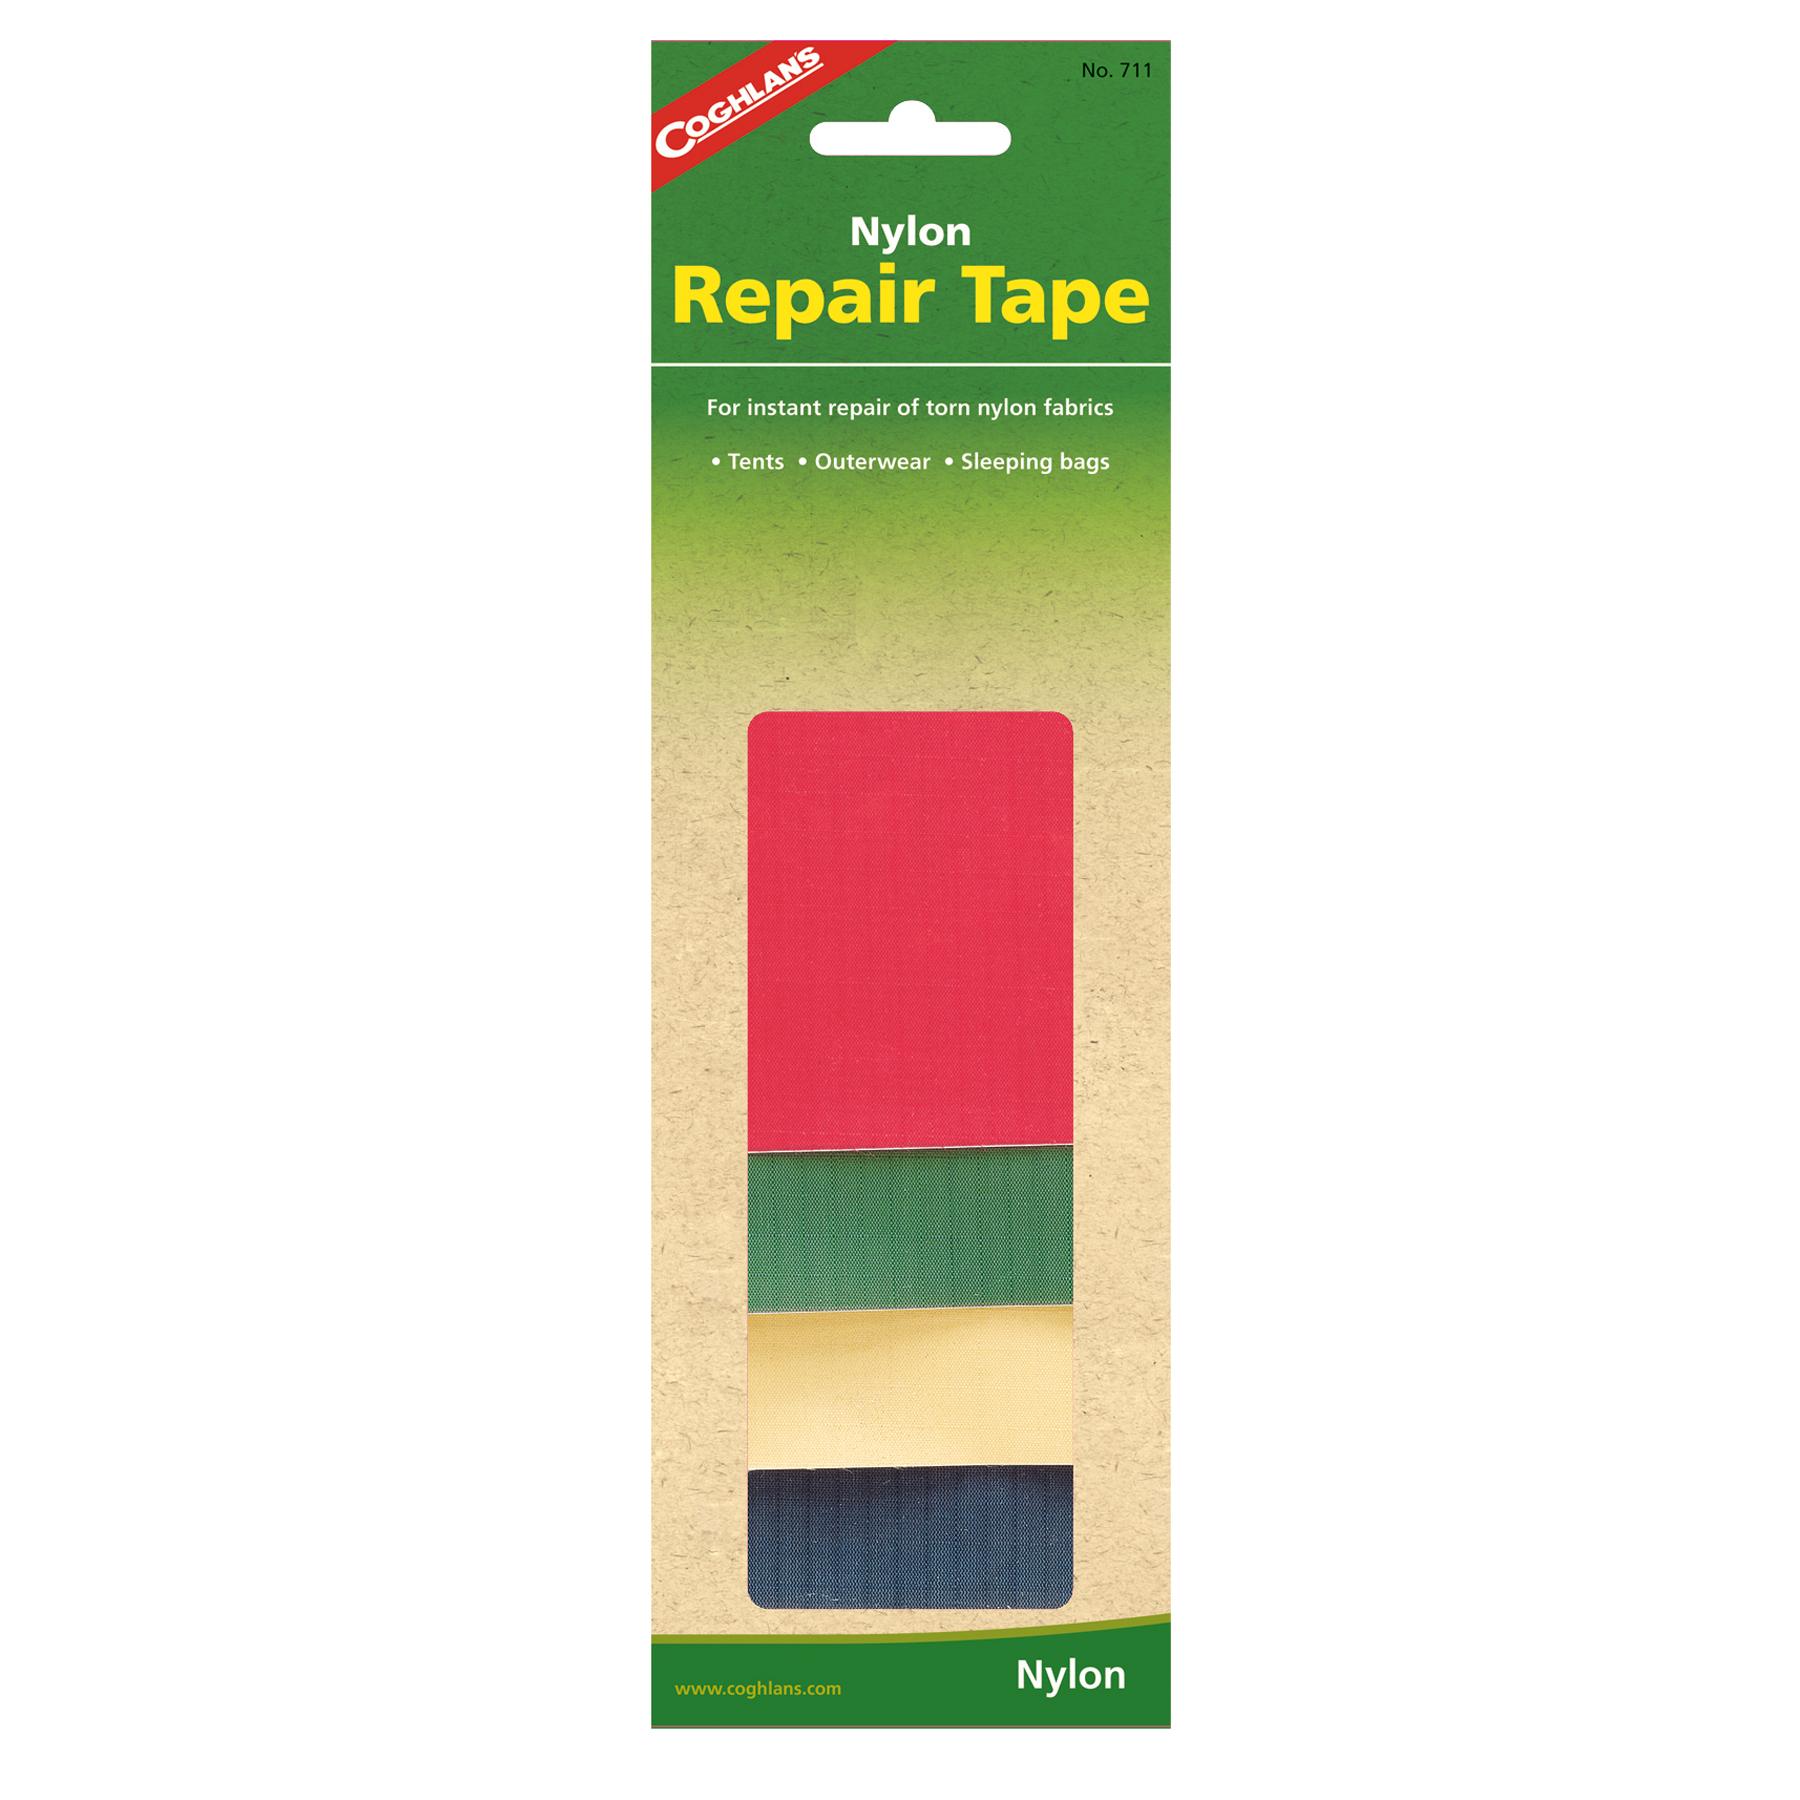  Nylon Repair Tape 4pk.